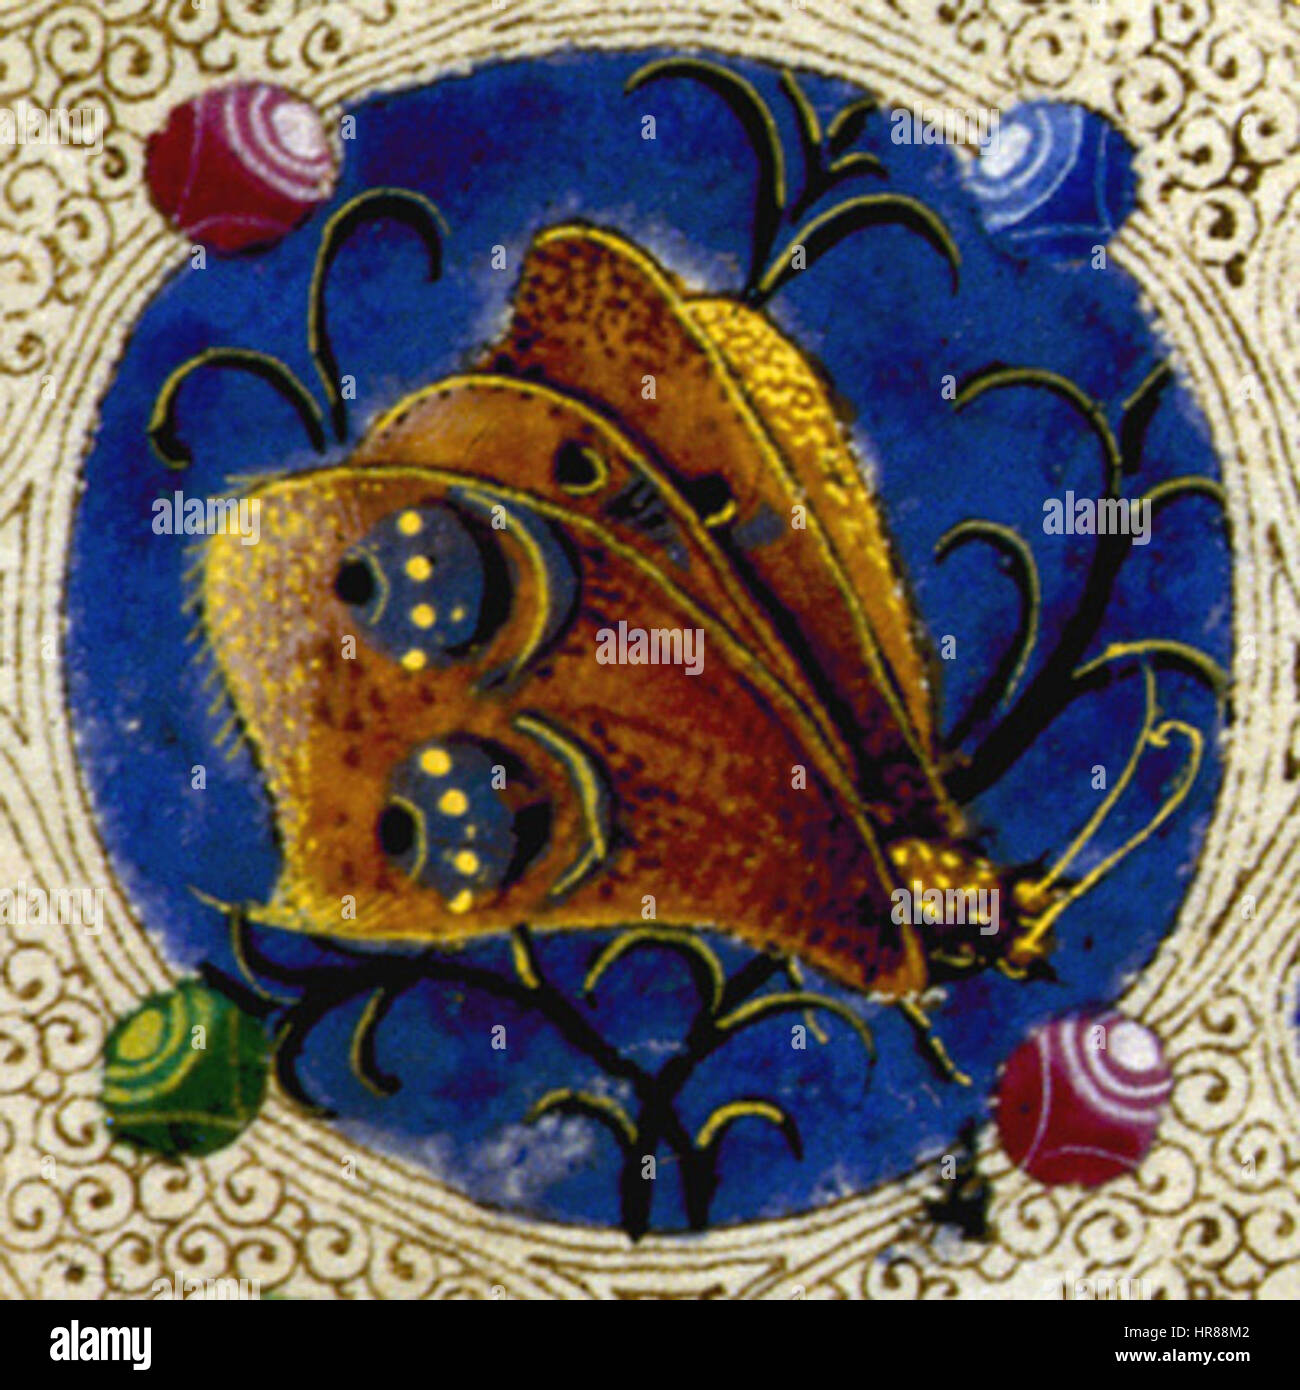 Taddeo crivelli, bibbia di borso d'este 06 Stock Photo